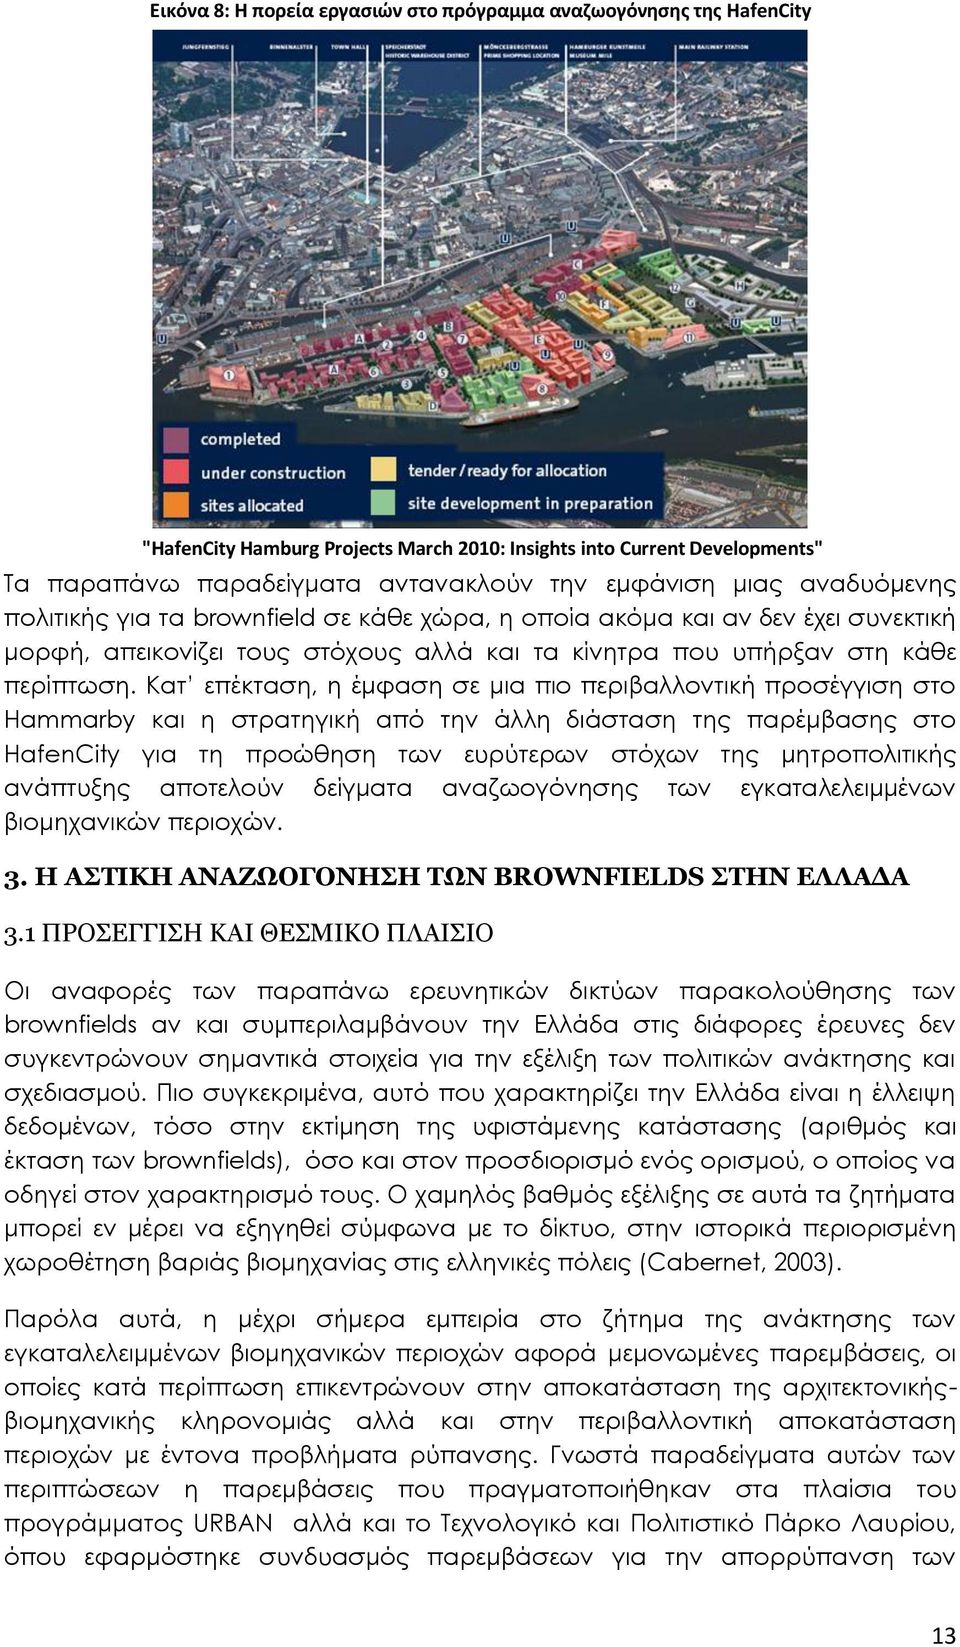 Κατ επέκταση, η έμφαση σε μια πιο περιβαλλοντική προσέγγιση στο Hammarby και η στρατηγική από την άλλη διάσταση της παρέμβασης στο HafenCity για τη προώθηση των ευρύτερων στόχων της μητροπολιτικής